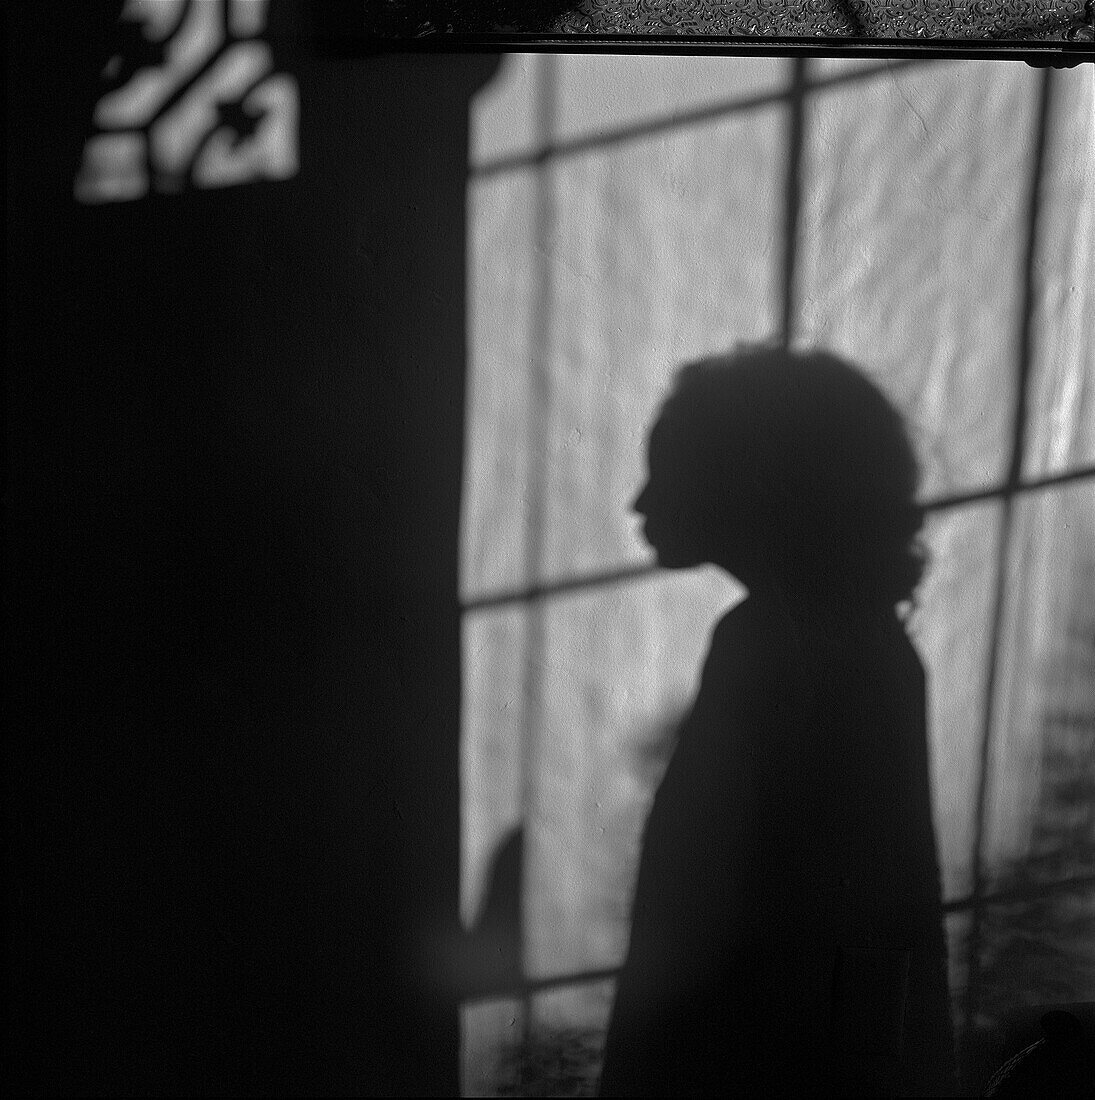 Girl's Shadow & Window